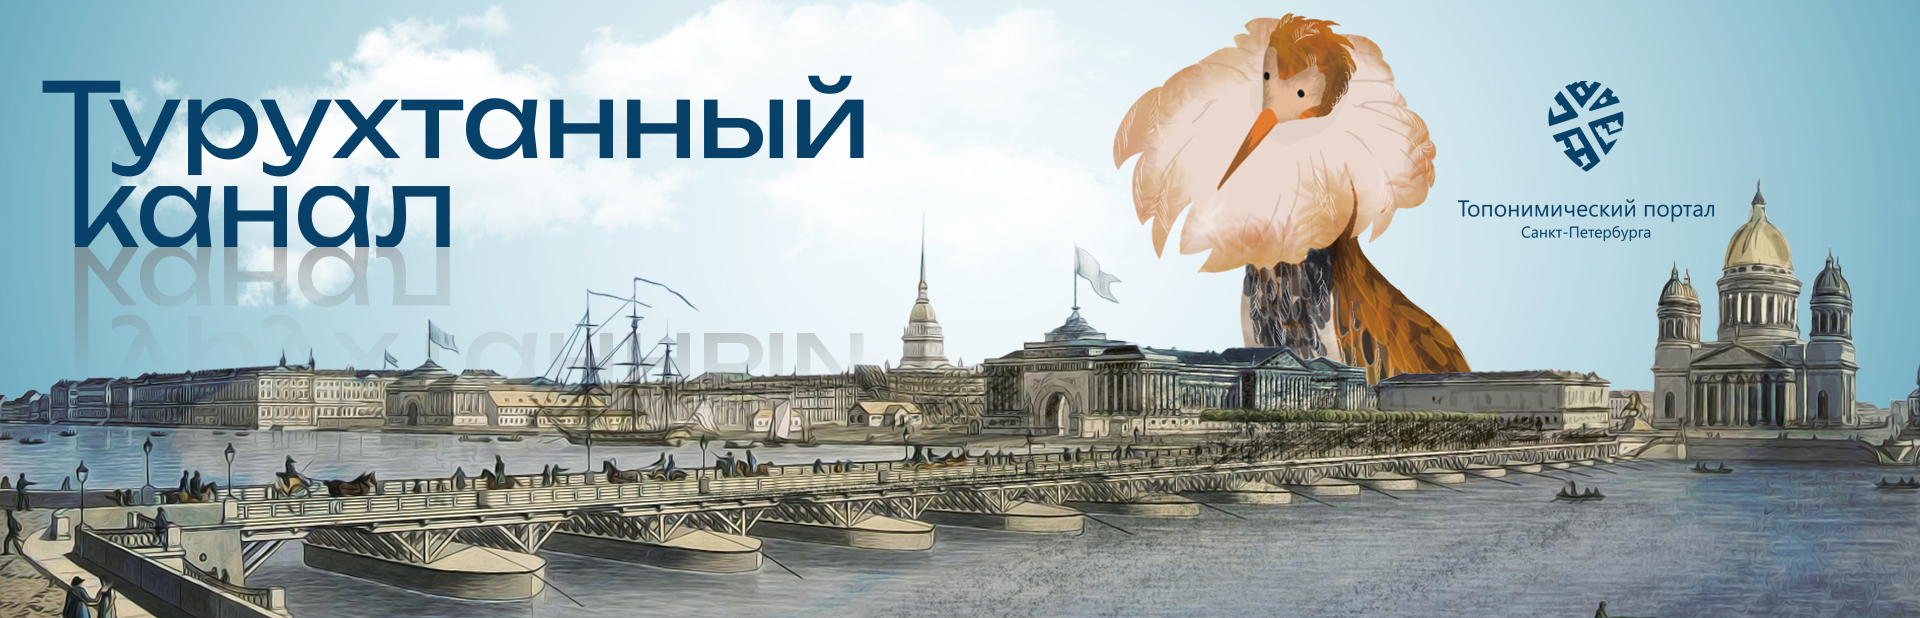 Топонимический портал Санкт-Петербурга запускает «Турухтанный канал»